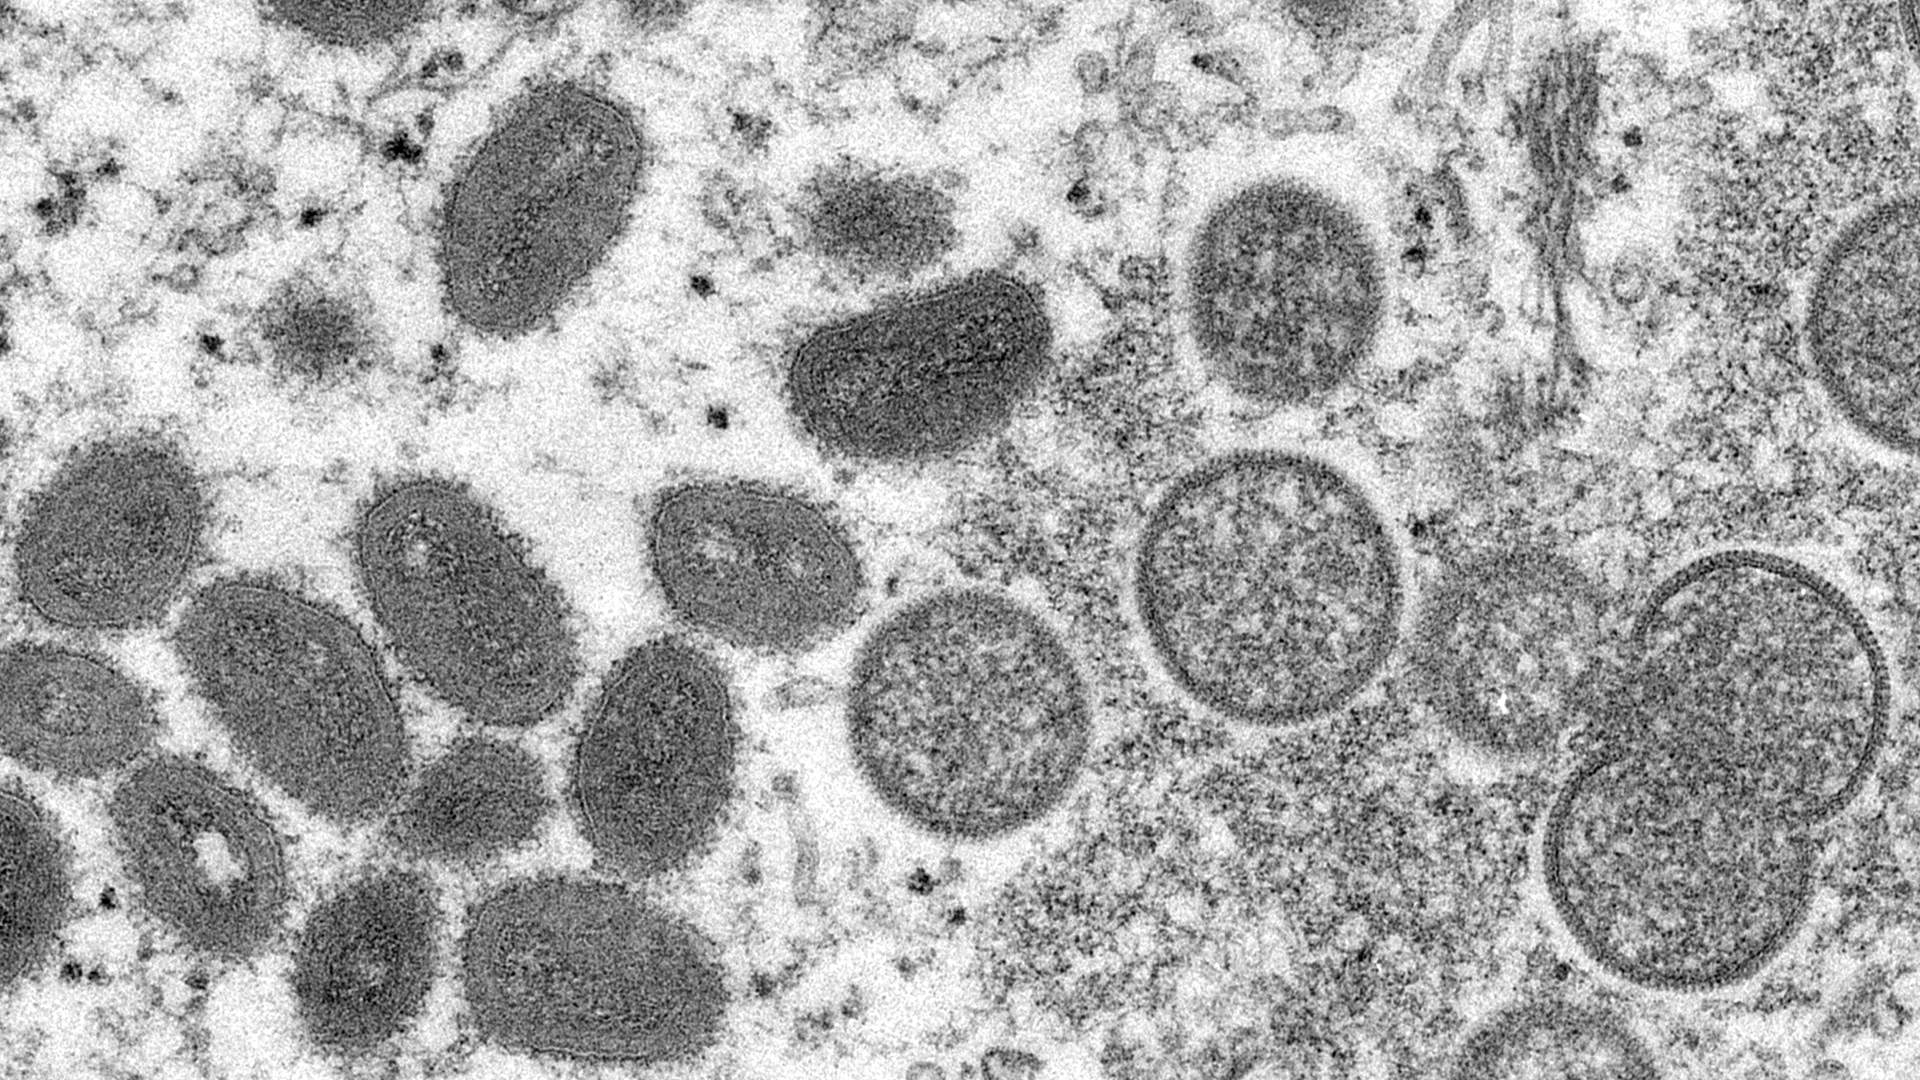 Die elektronenmikroskopische Aufnahme aus dem Jahr 2003, die von den Centers for Disease Control and Prevention zur Verfügung gestellt wurde, zeigt reife, ovale Affenpockenviren (l) und kugelförmige unreife Virionen (r)